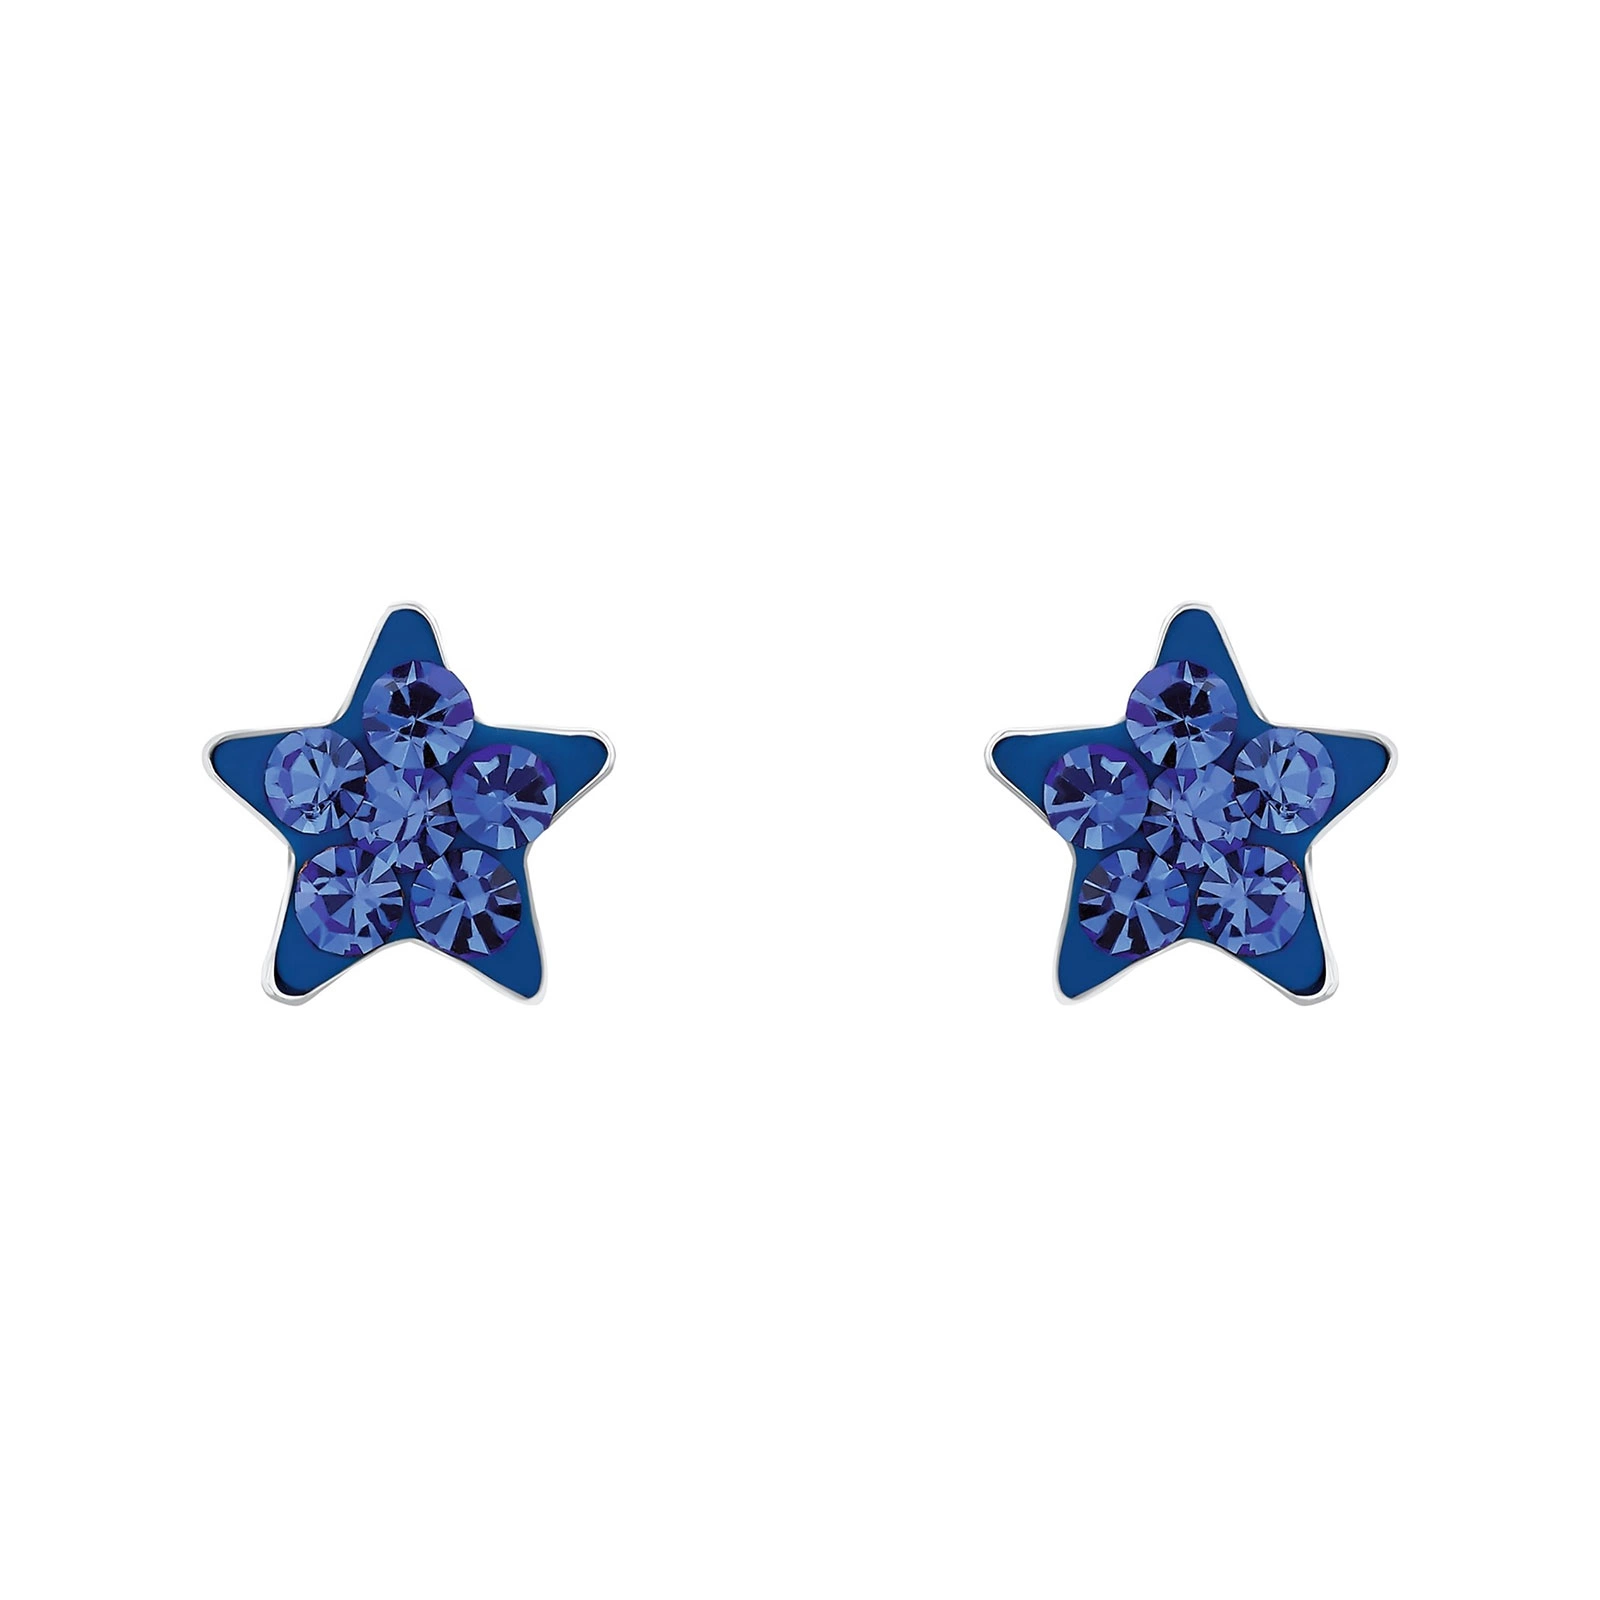 Silverörhängen barn - blå stjärnor, 6 mm